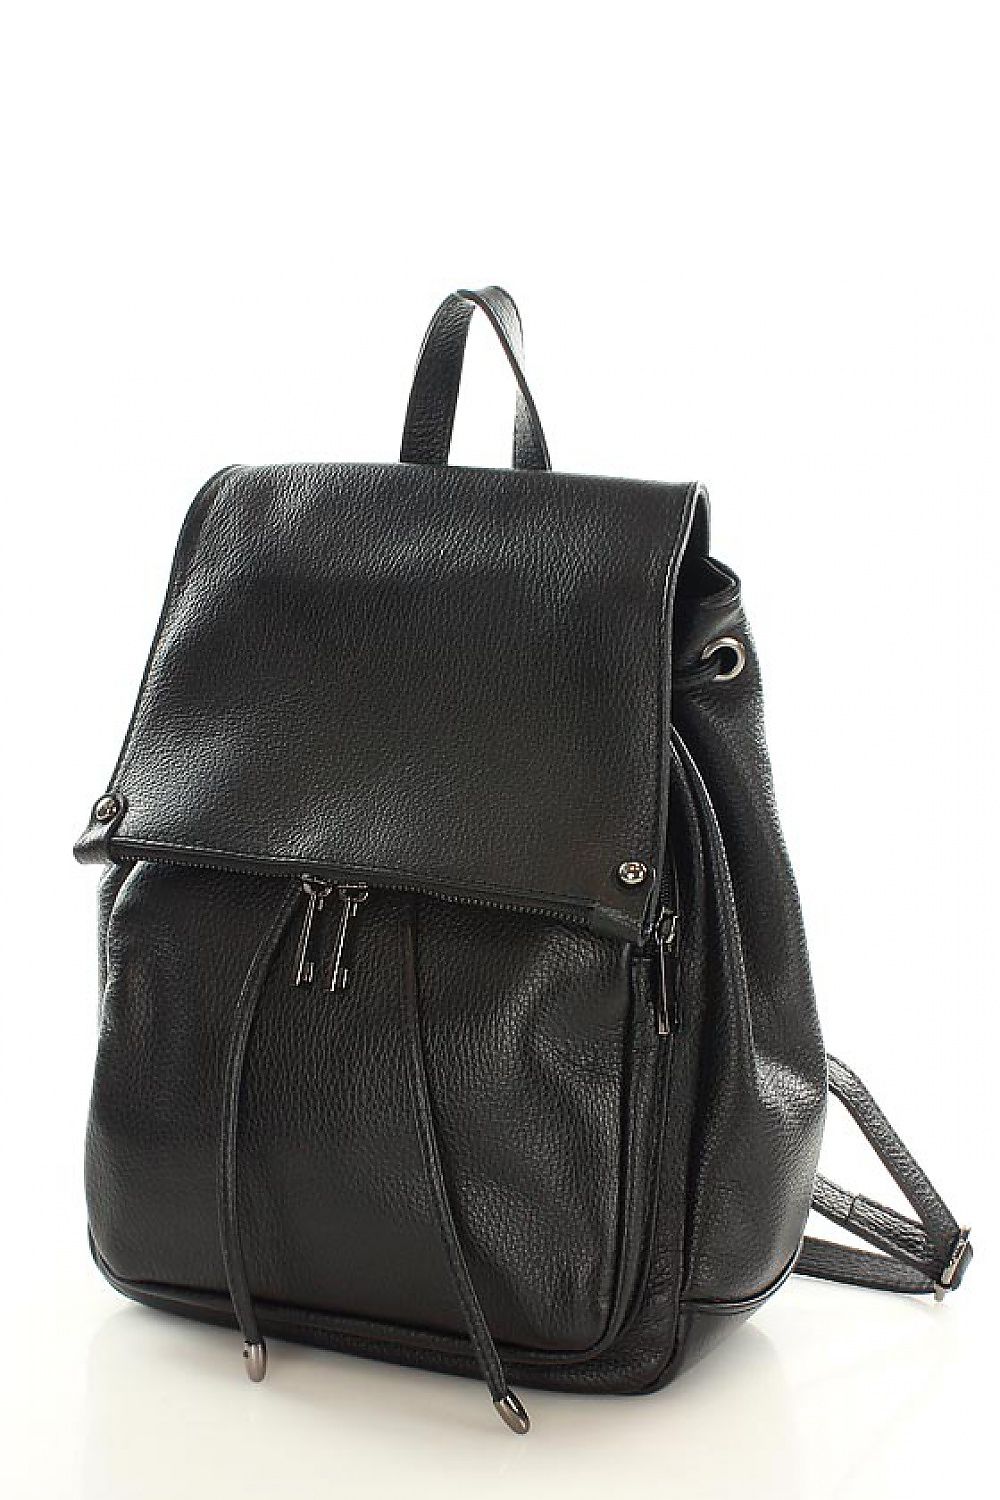 Rucksack model 110293 Vera pelle Casual Handbags, Shoulder Bags ...